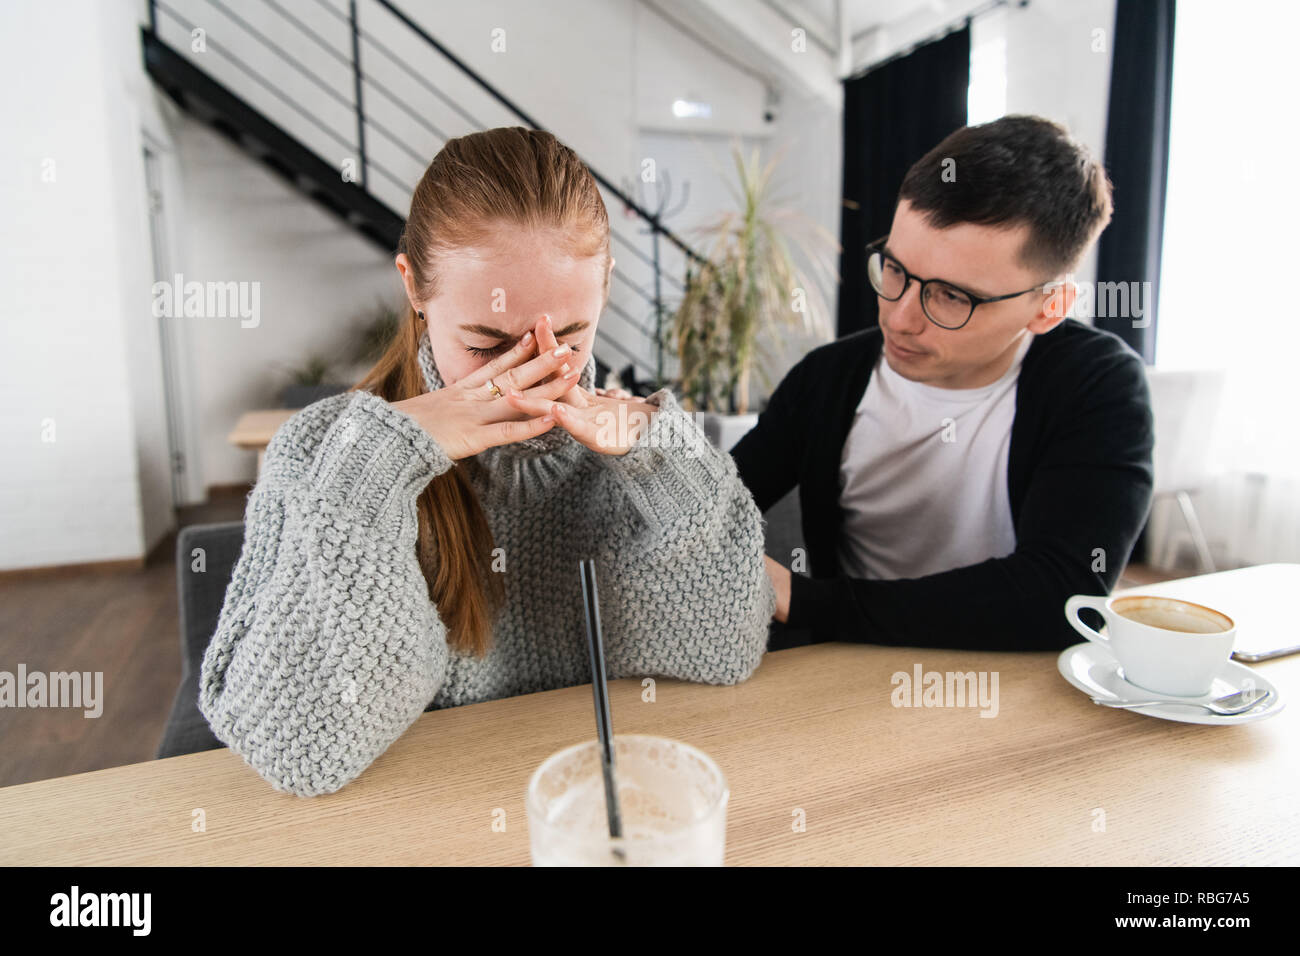 Réunion d'une femme triste et un ami ou petit ami essaie de réconforter dans le café Banque D'Images